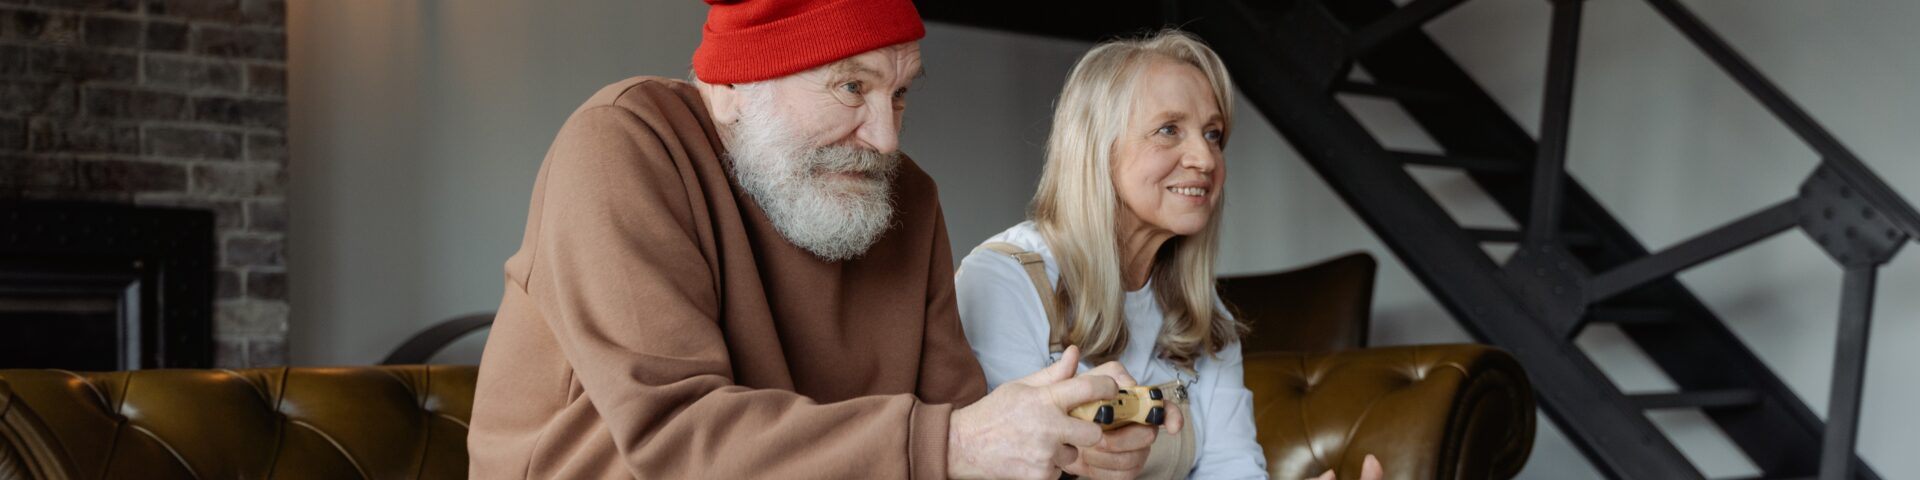 man en vrouw spelen computerspel op bank als afbeelding bij blog over 7 essentiële onderdelen van je dag